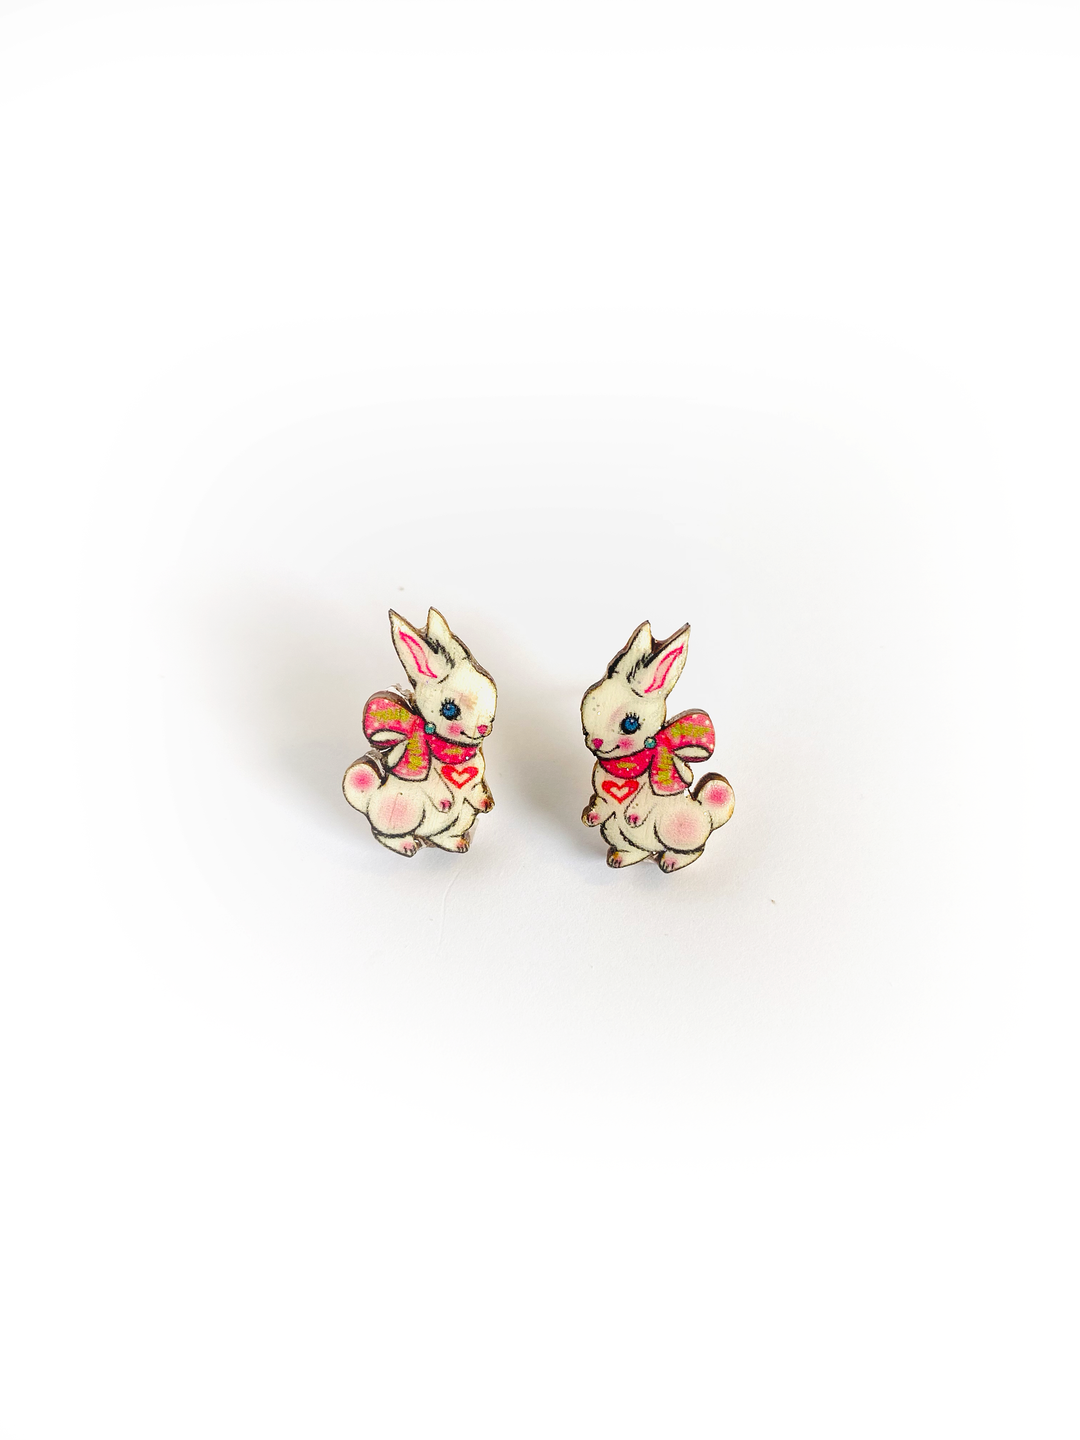 Rabbit Stud Earrings by Rosie Rose Parker